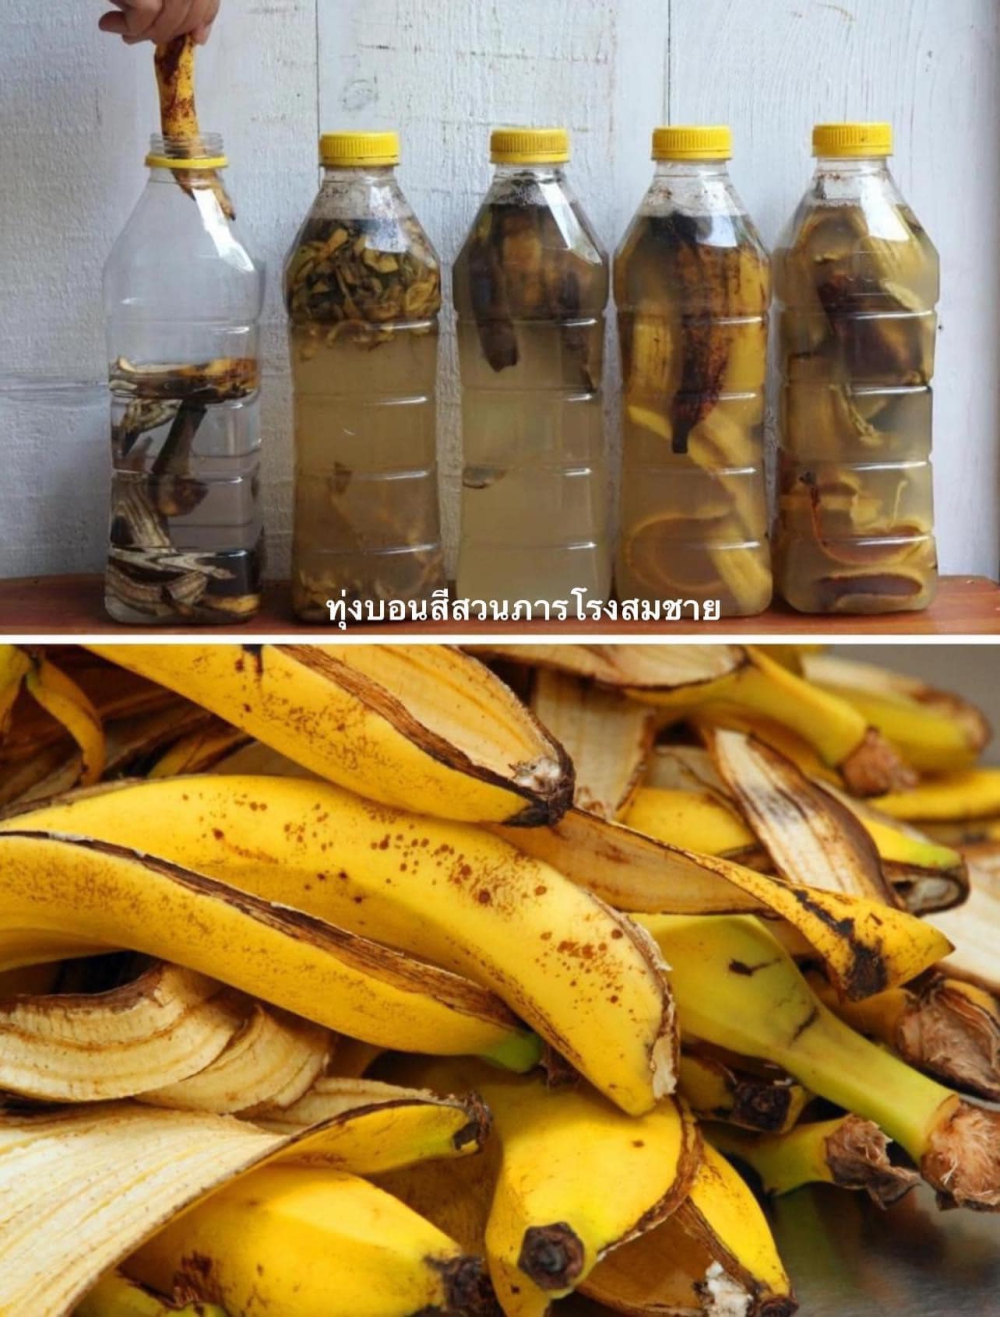 น้ำหมักเปลือกกล้วย ทำง่ายๆ ได้ผลดี ผลดก แข็งแรง